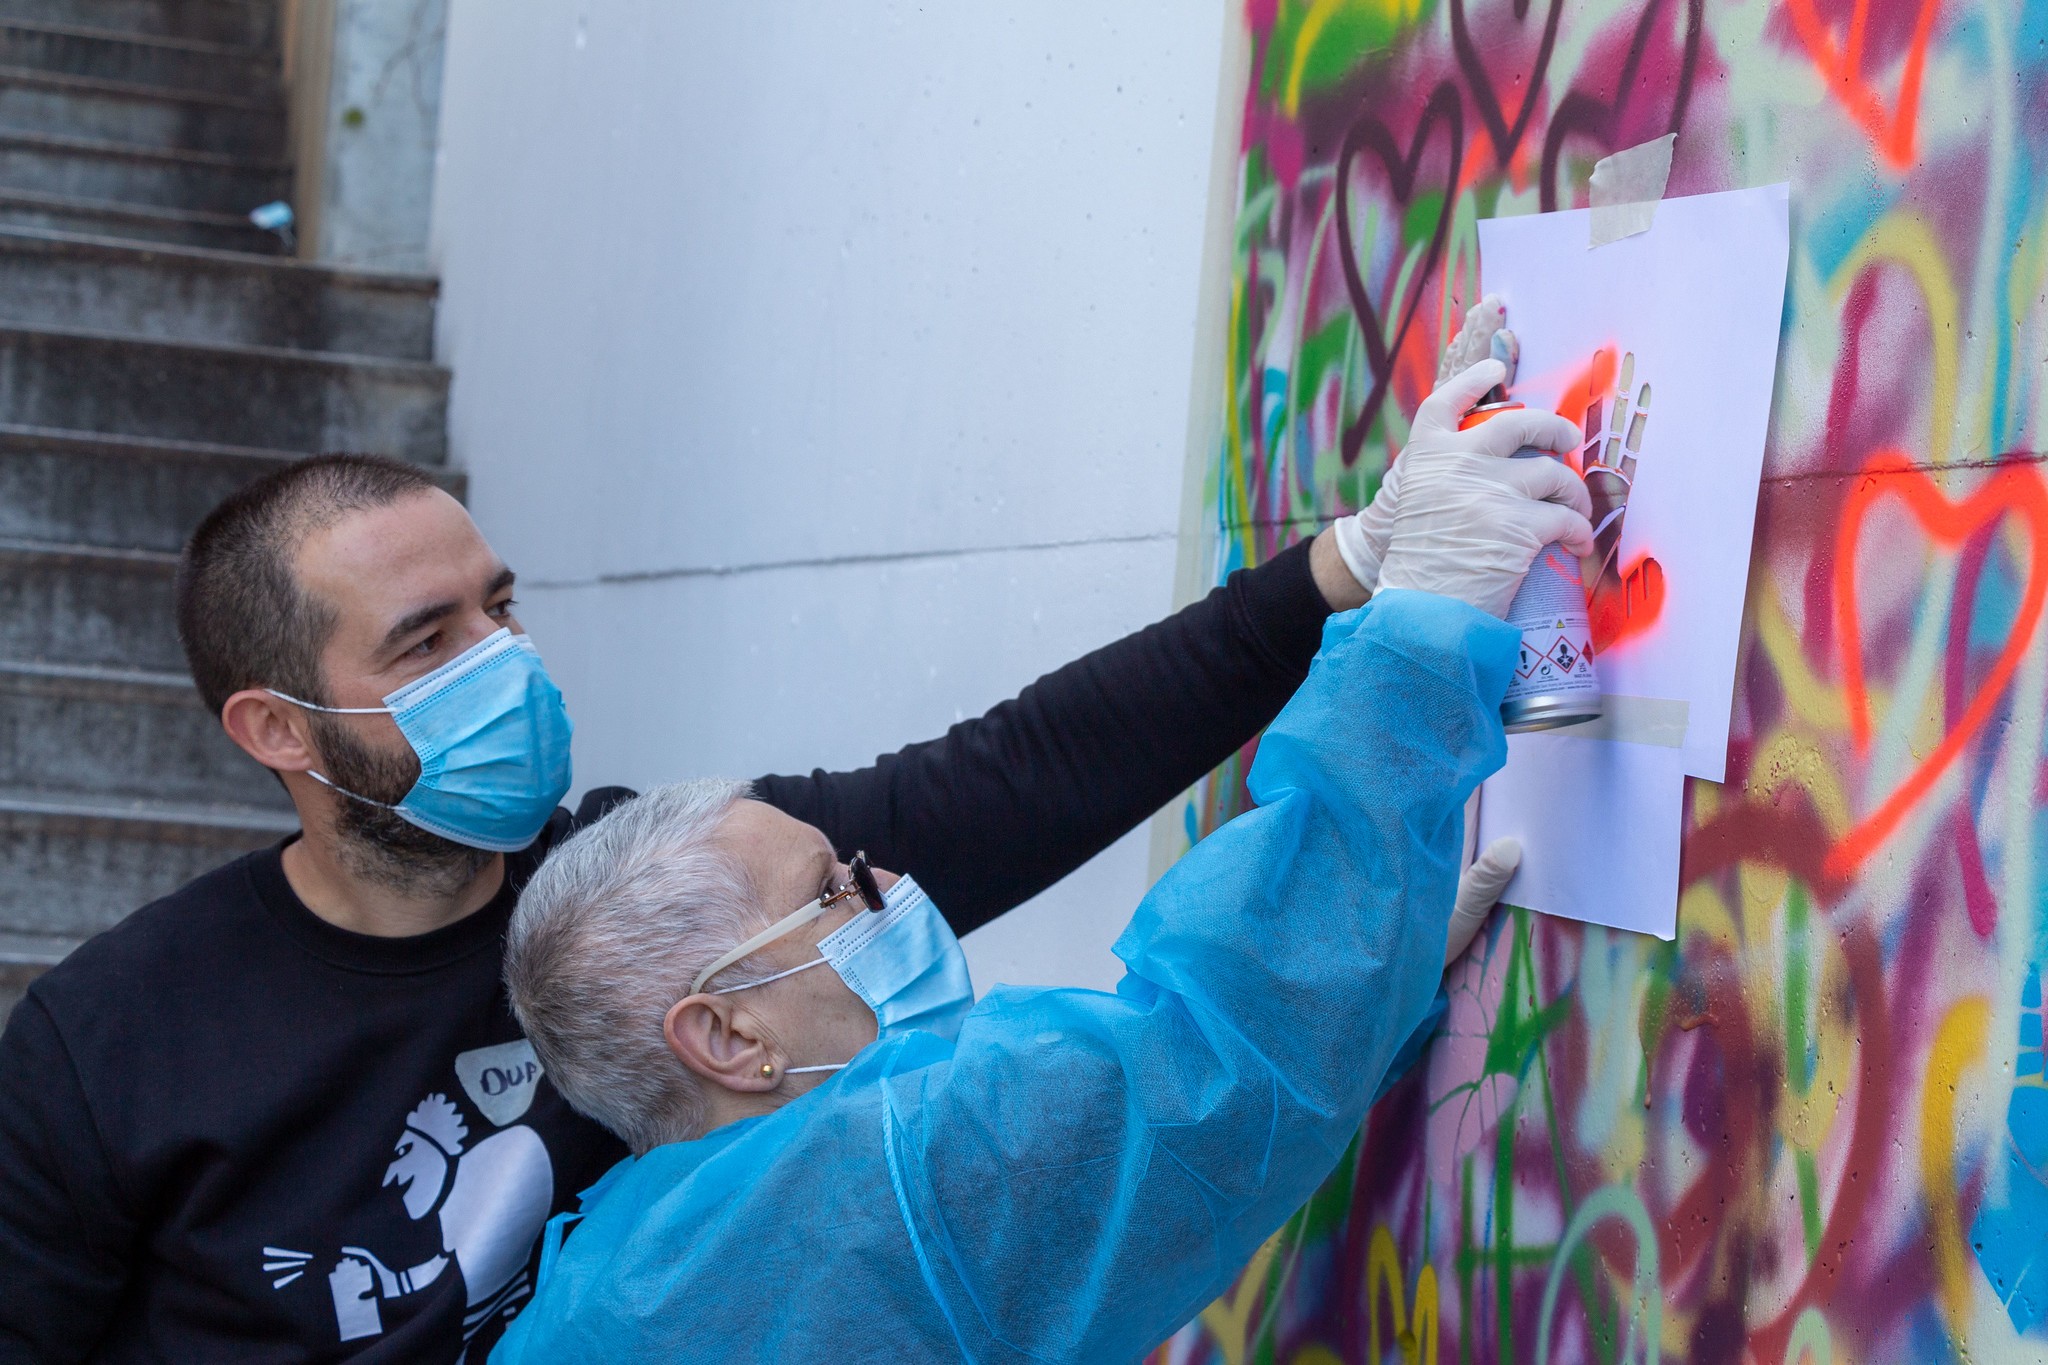 Seniores põem “mãos na lata” e decoram muro no Bom Sucesso